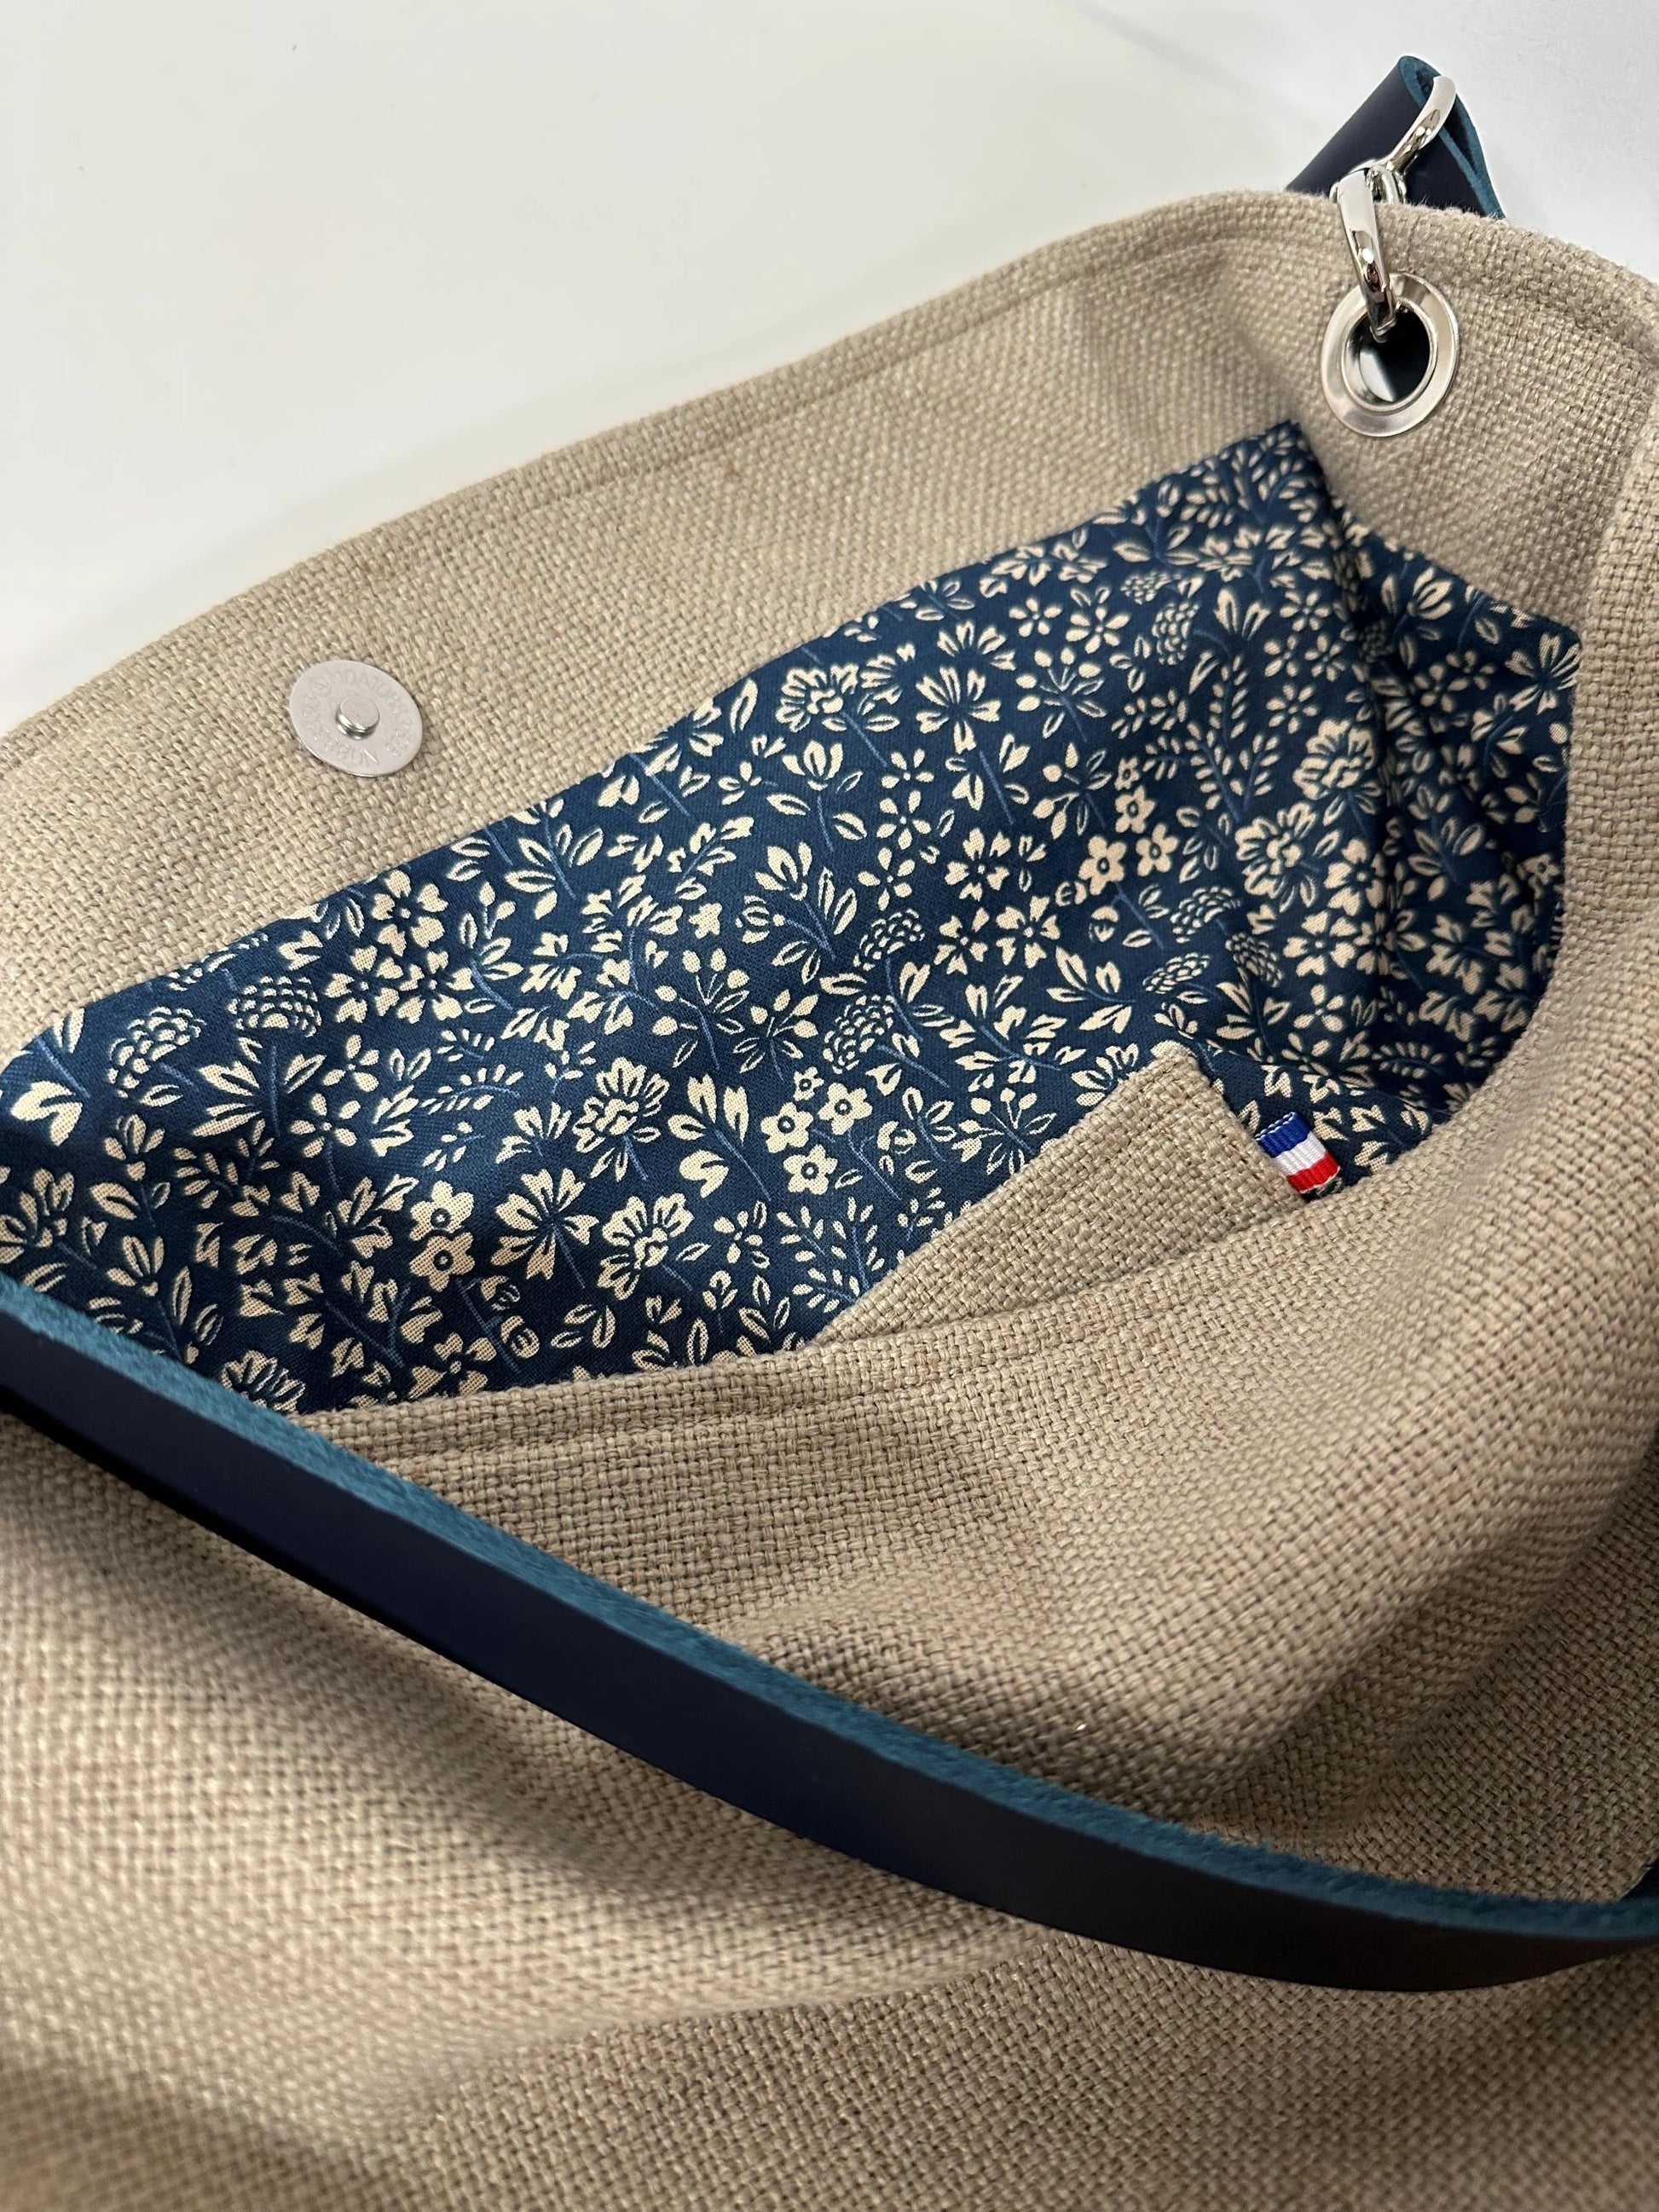 La poche plaquée intérieure du sac Hobo en lin beige et son anse en cuir bleu marine .